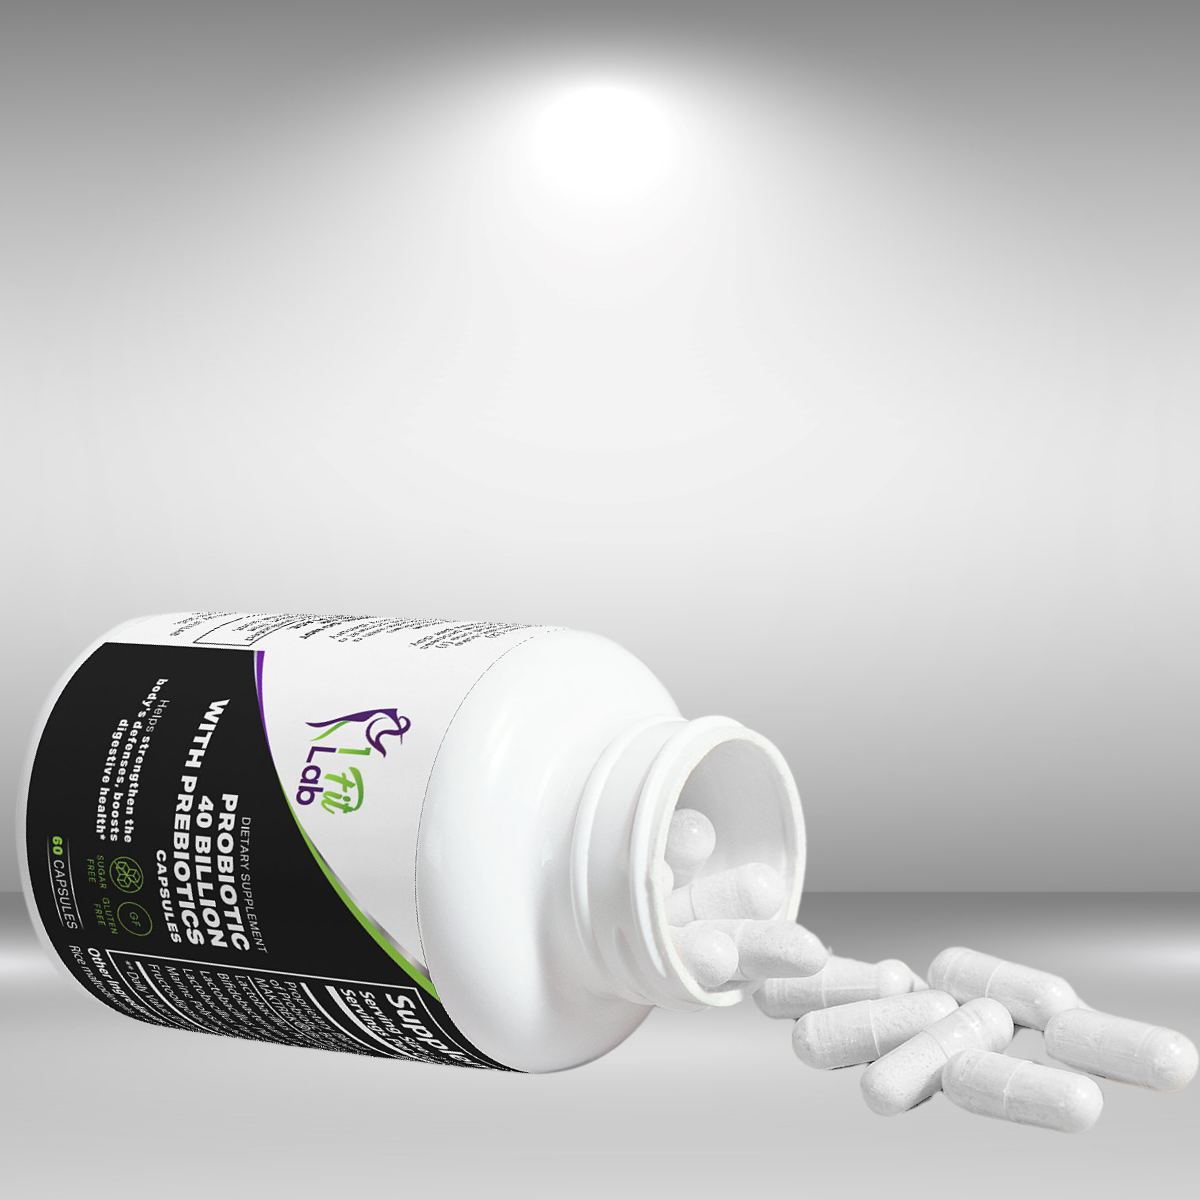 bottle and capsules of probiotic 40 billion with prebiotics premium supplement